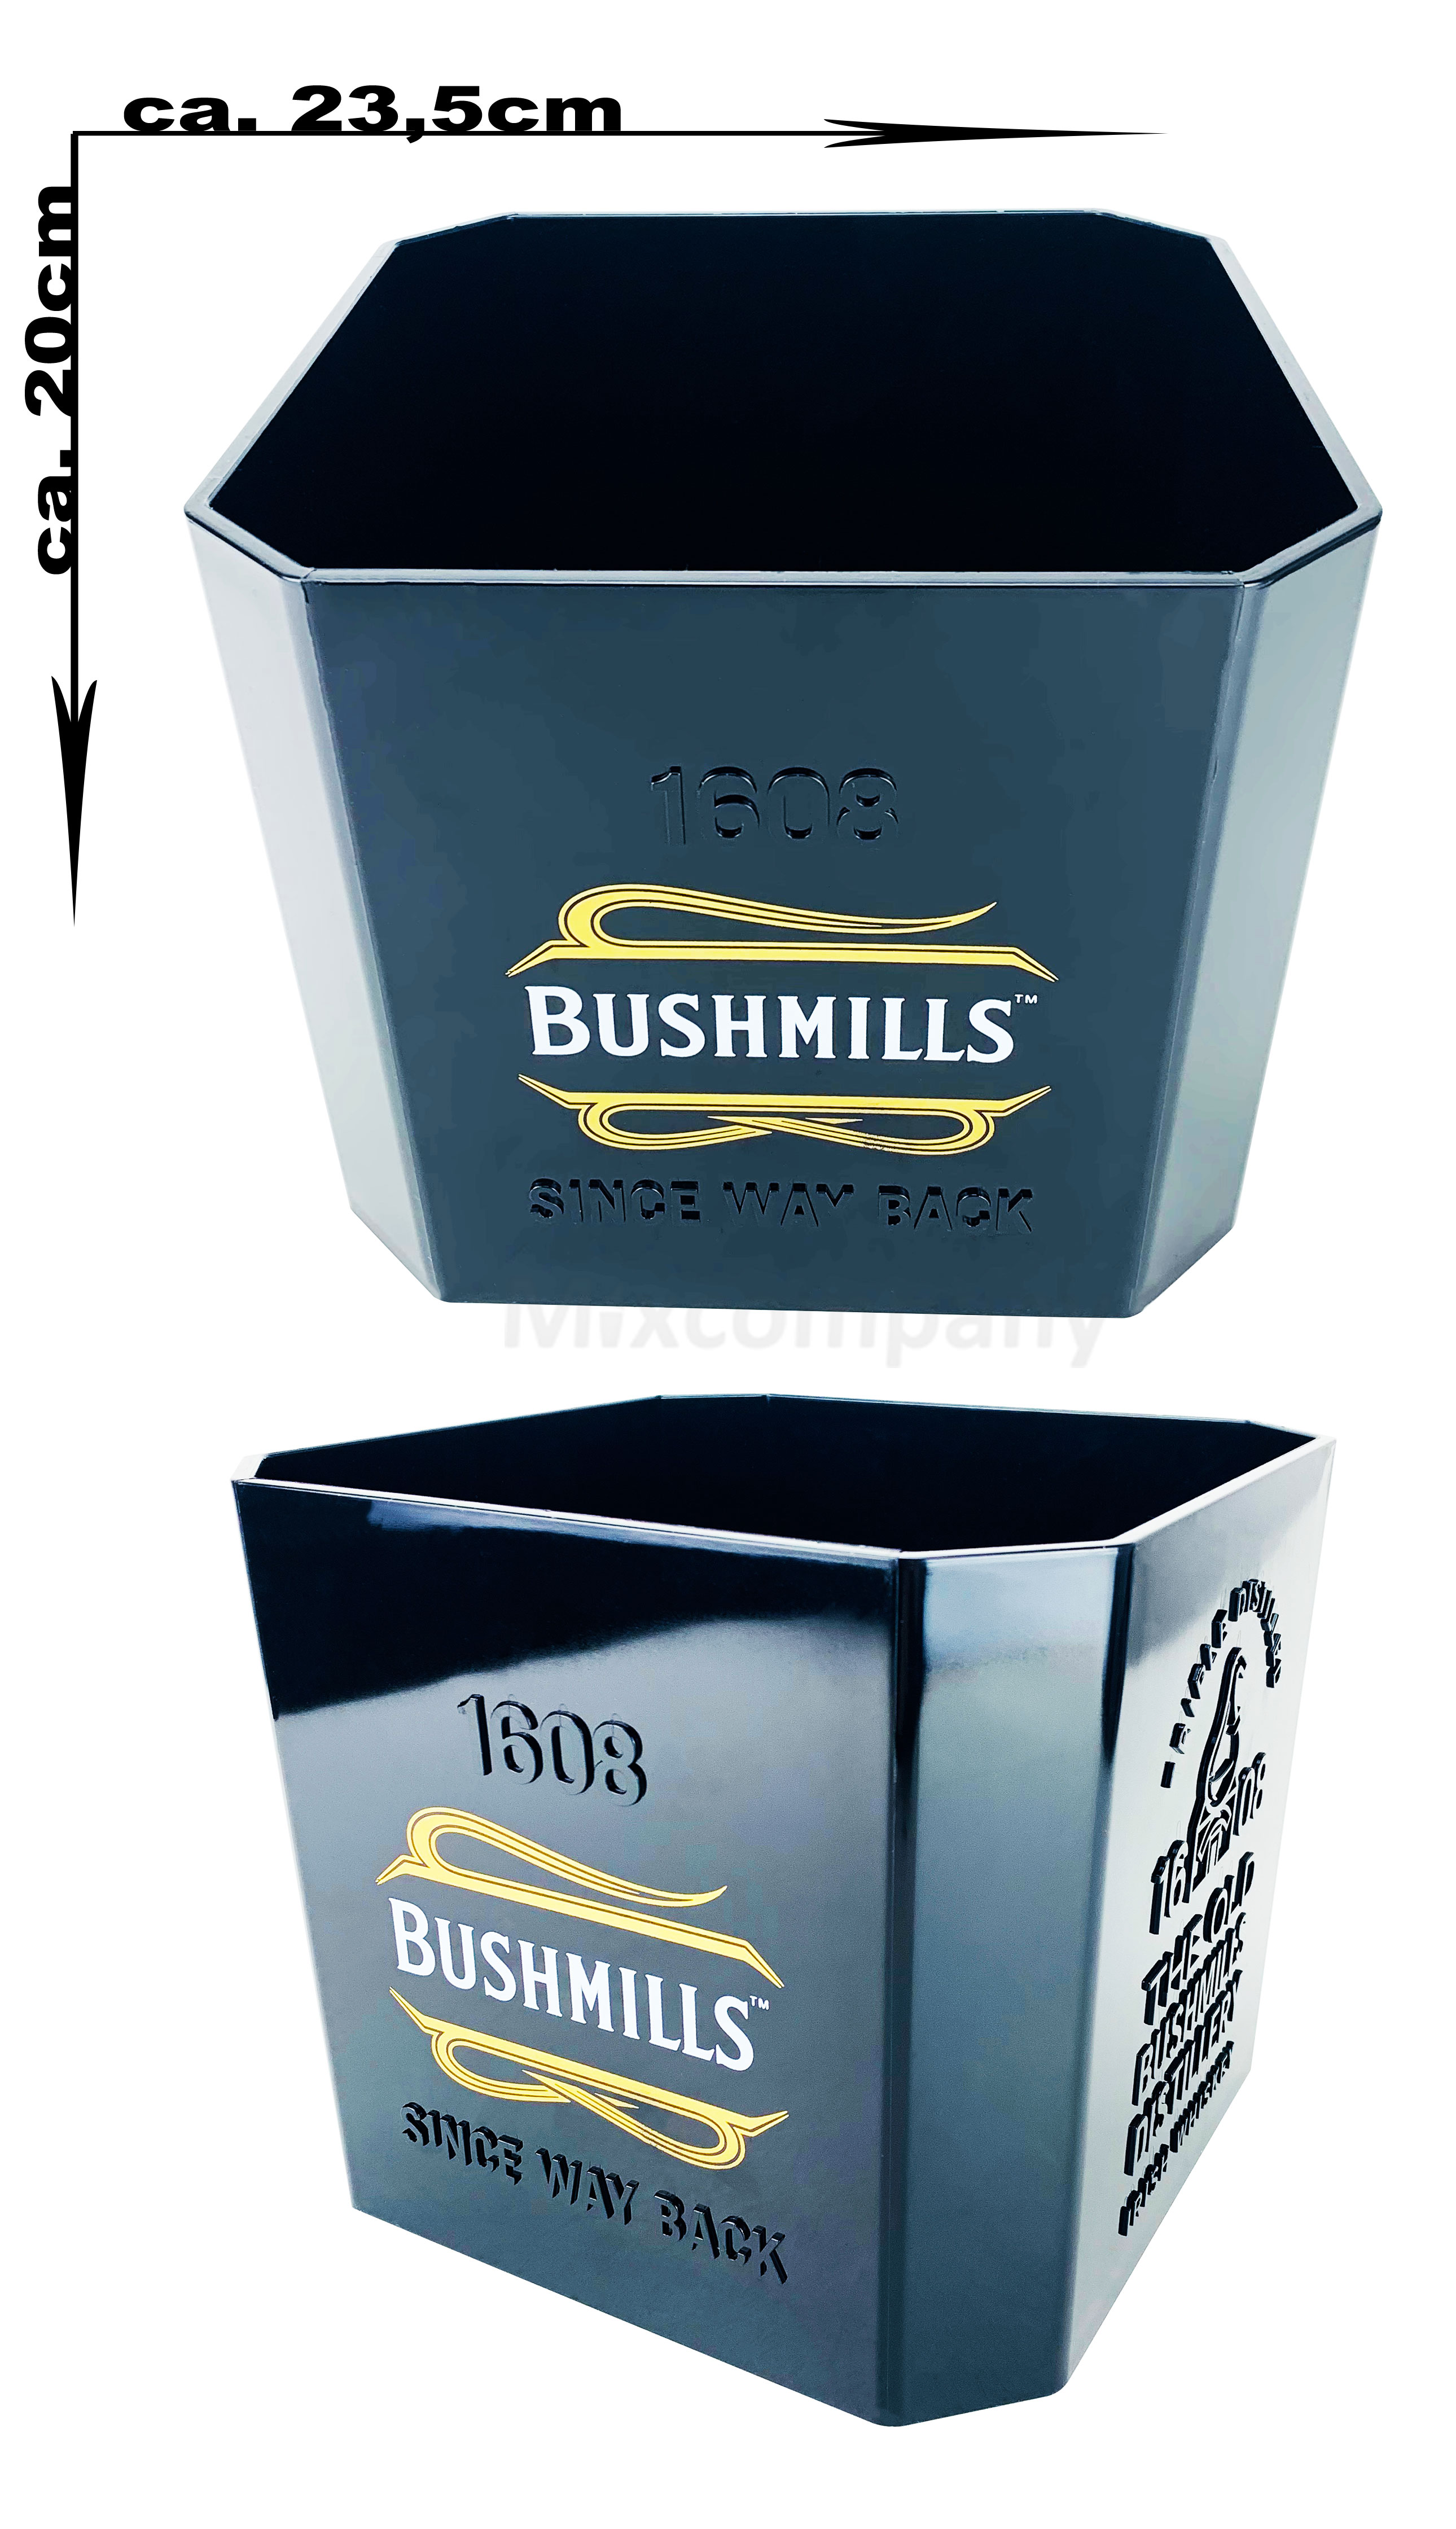 Bushmills Whiskey Kühler Flaschenkühler Eiskühler Eiskübel Eiswürfel Behälter schwarz - 20x23,5cm